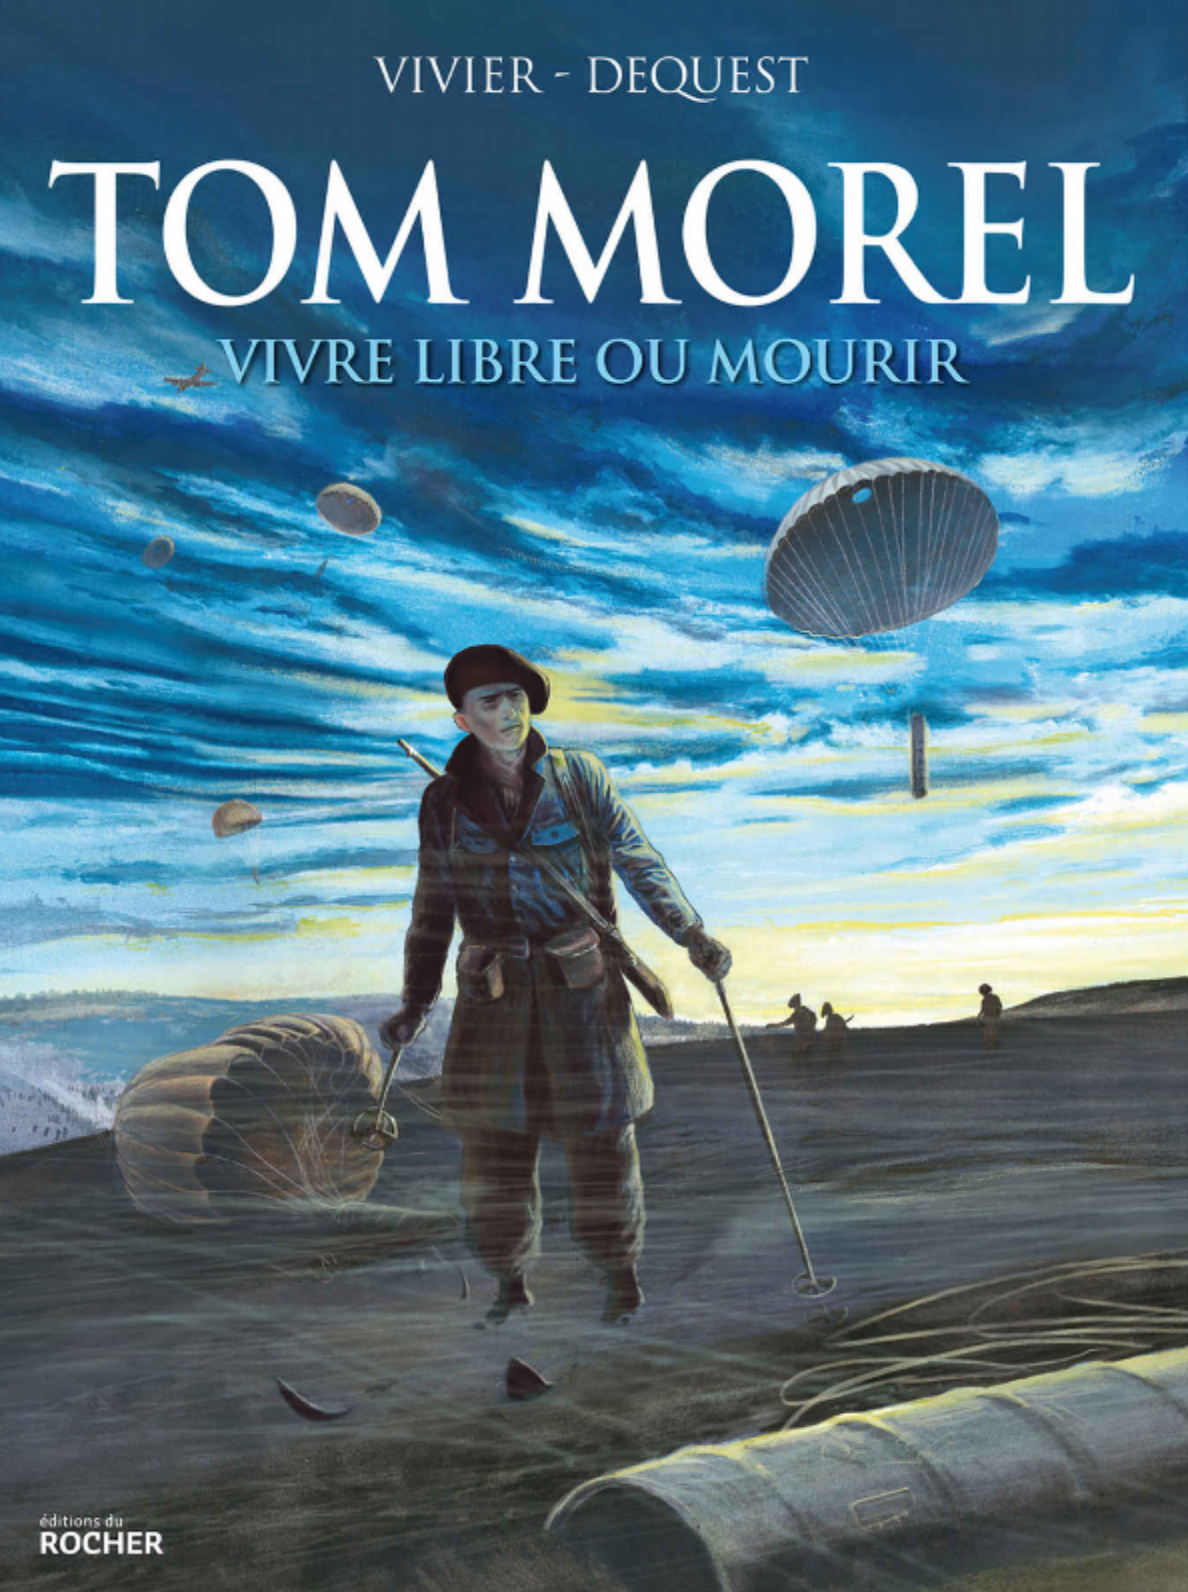 Tom Morel vivre libre ou mourir